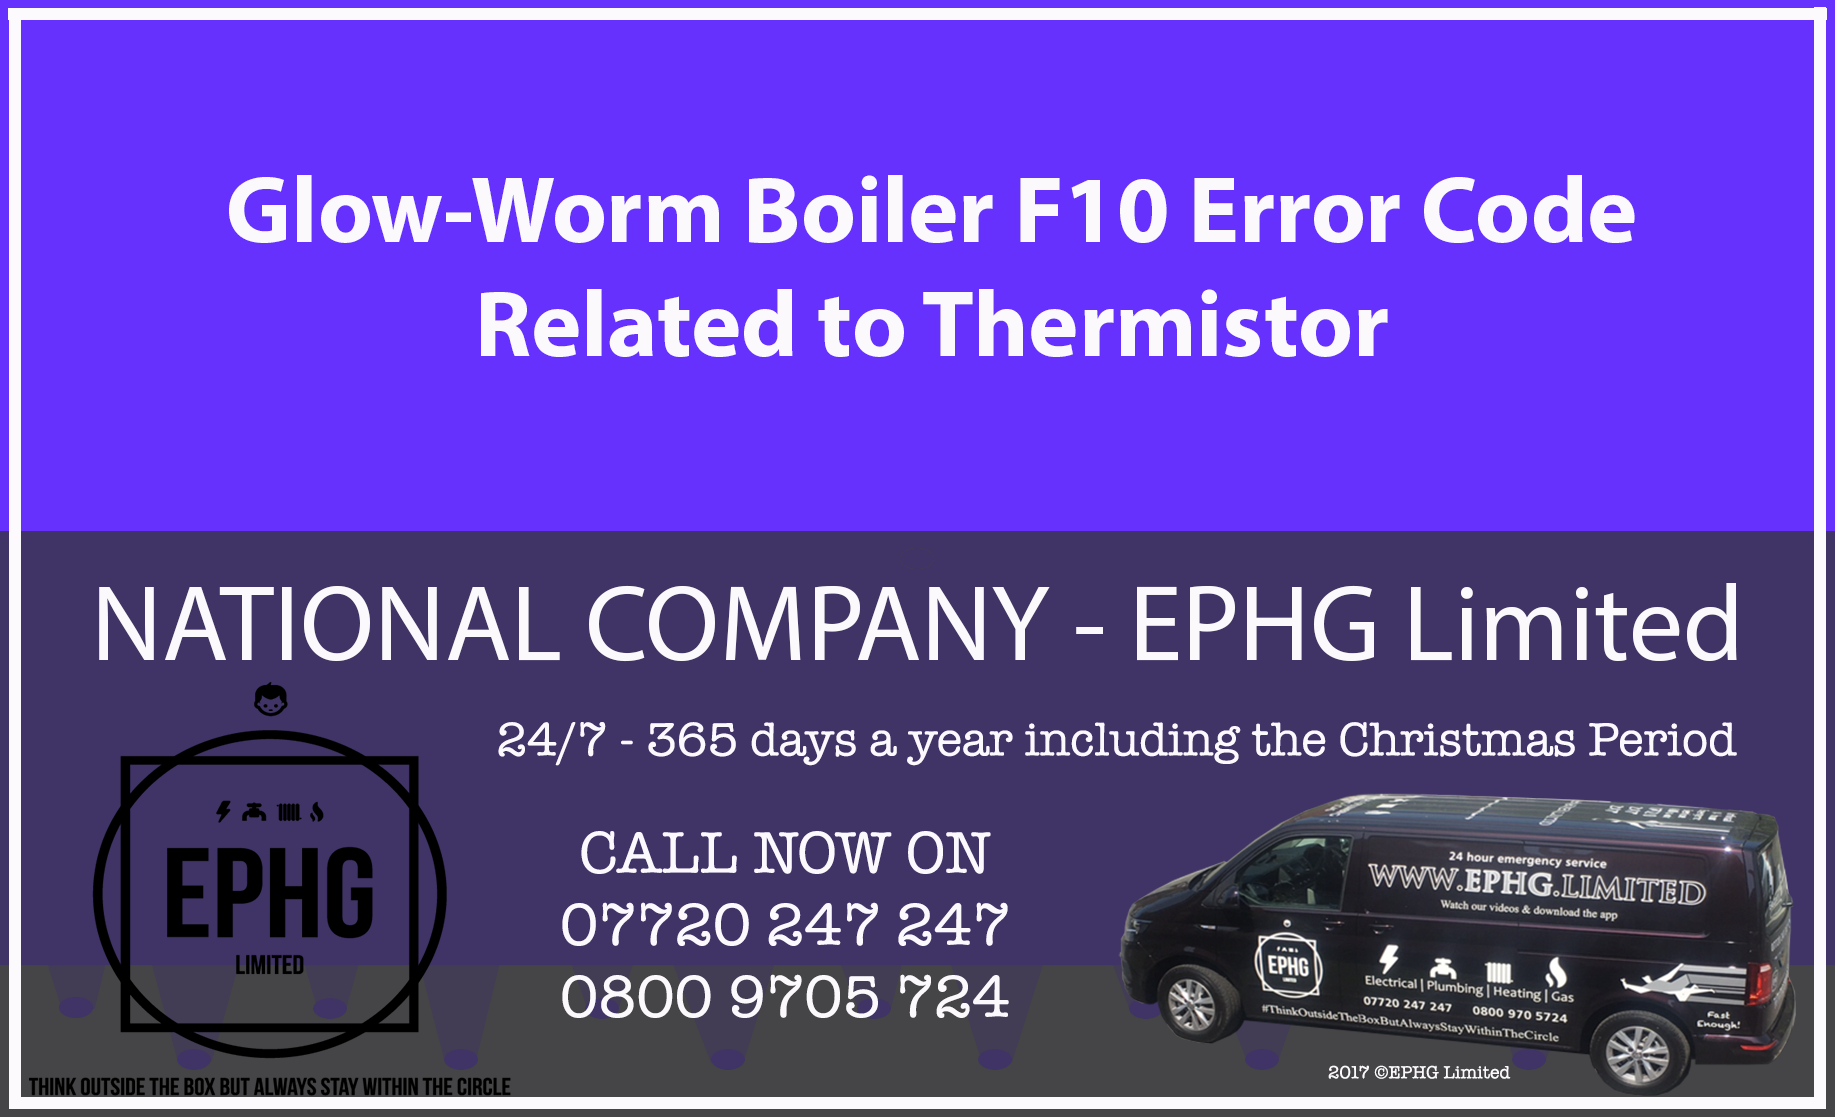 Glow-Worm boiler error code F10